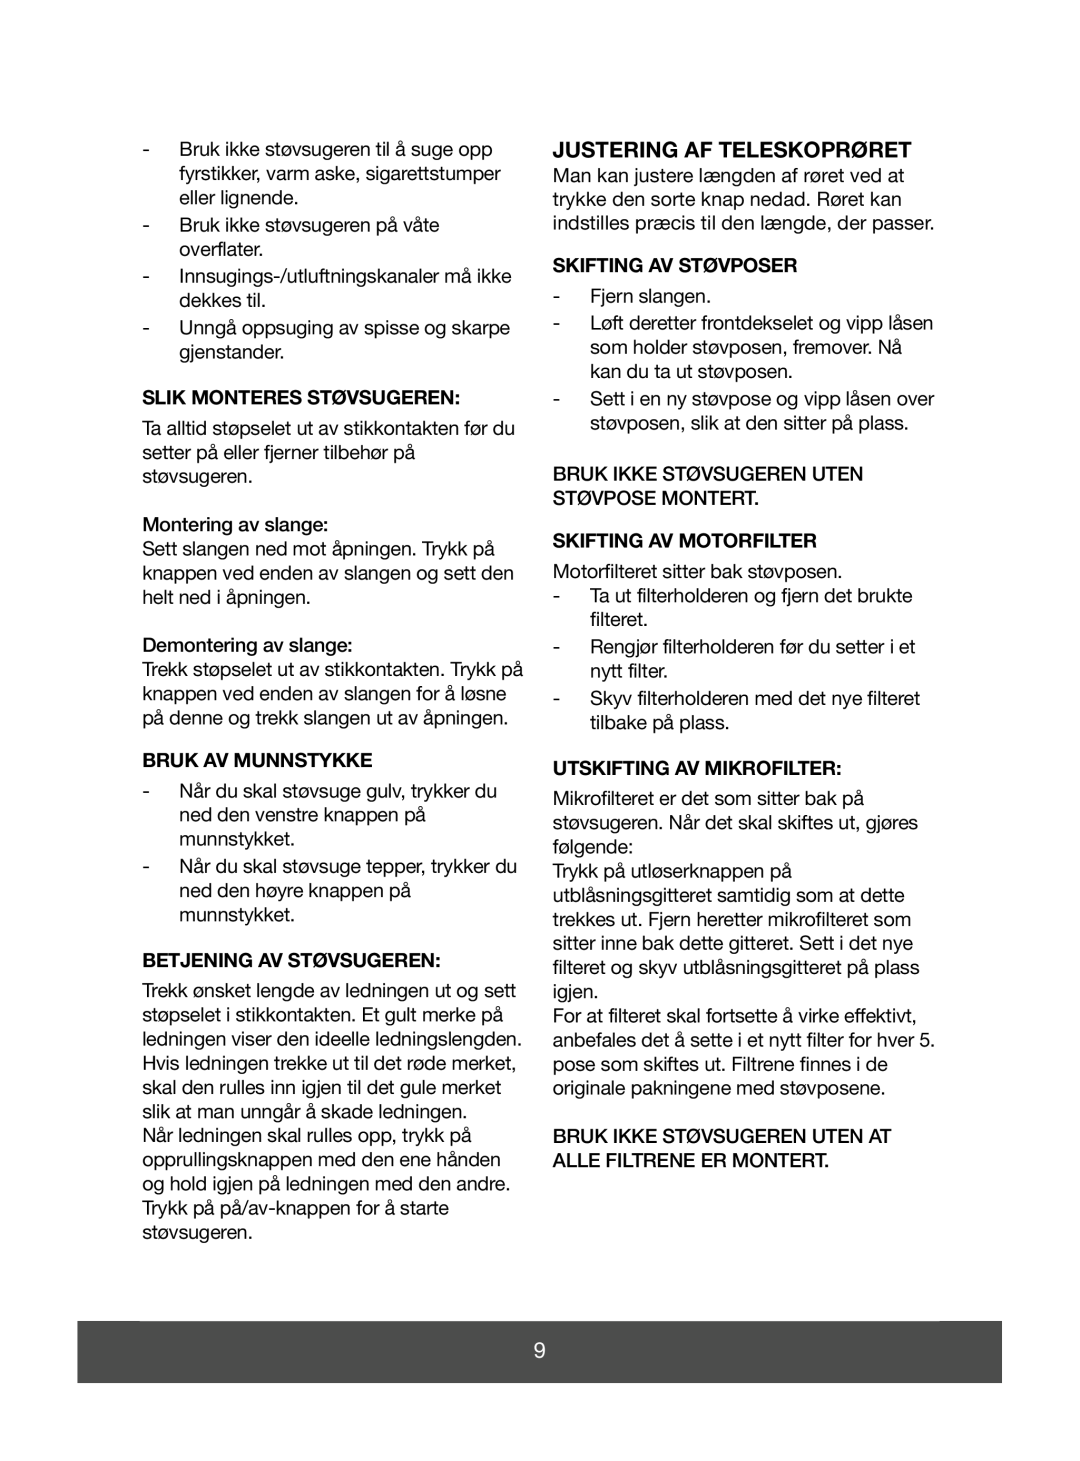 Melissa 640-043 manual Slik Monteres Støvsugeren, Bruk Av Munnstykke, Betjening Av Støvsugeren, Skifting Av Støvposer 